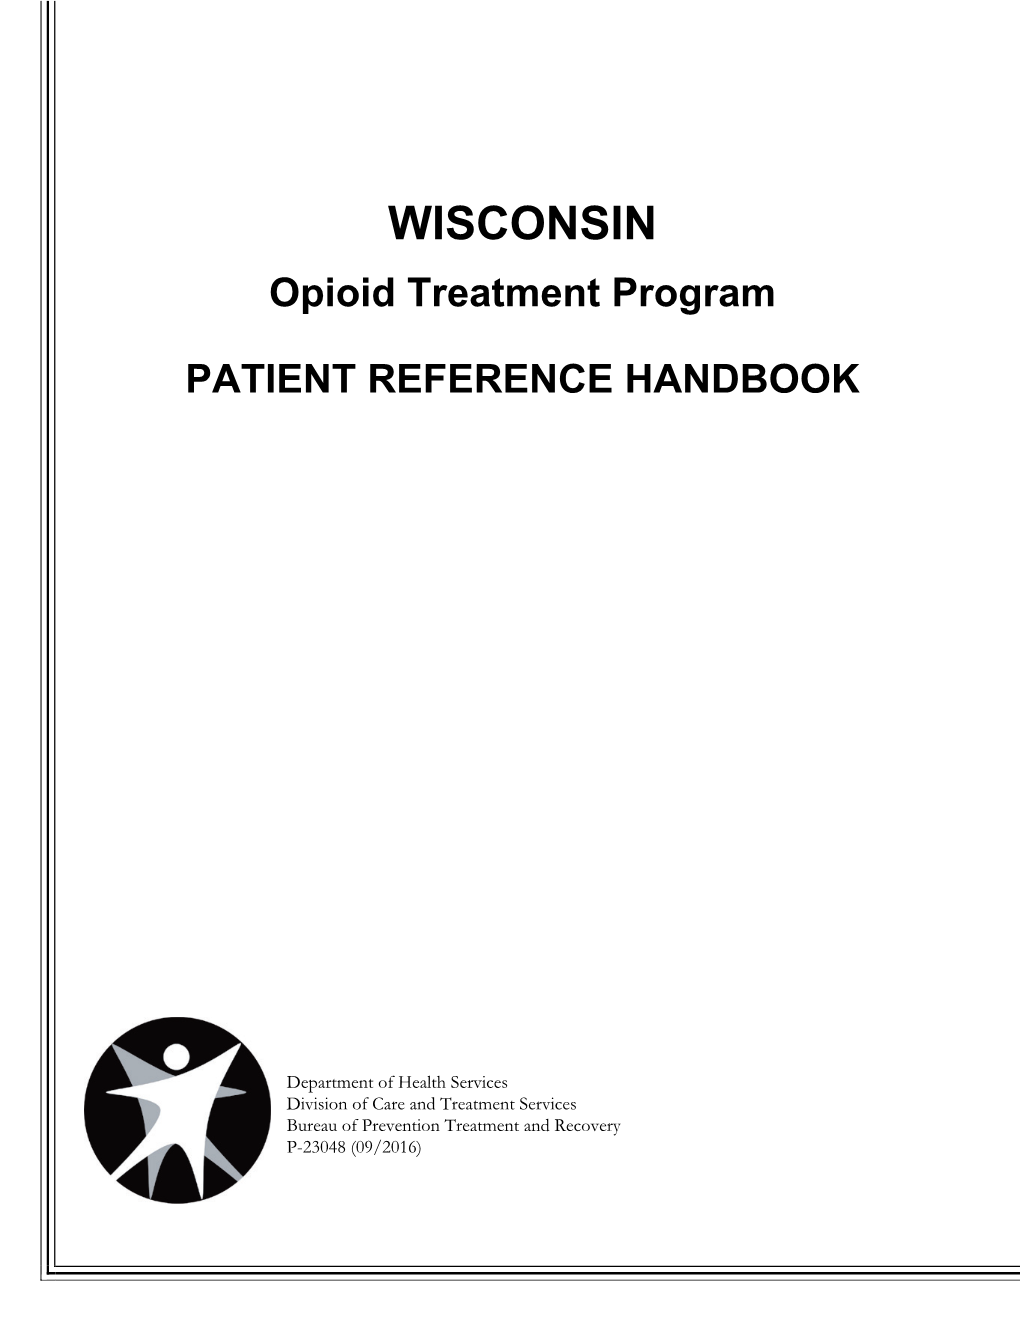 Wisconsin Opioid Treatment Program Patient Reference Handbook